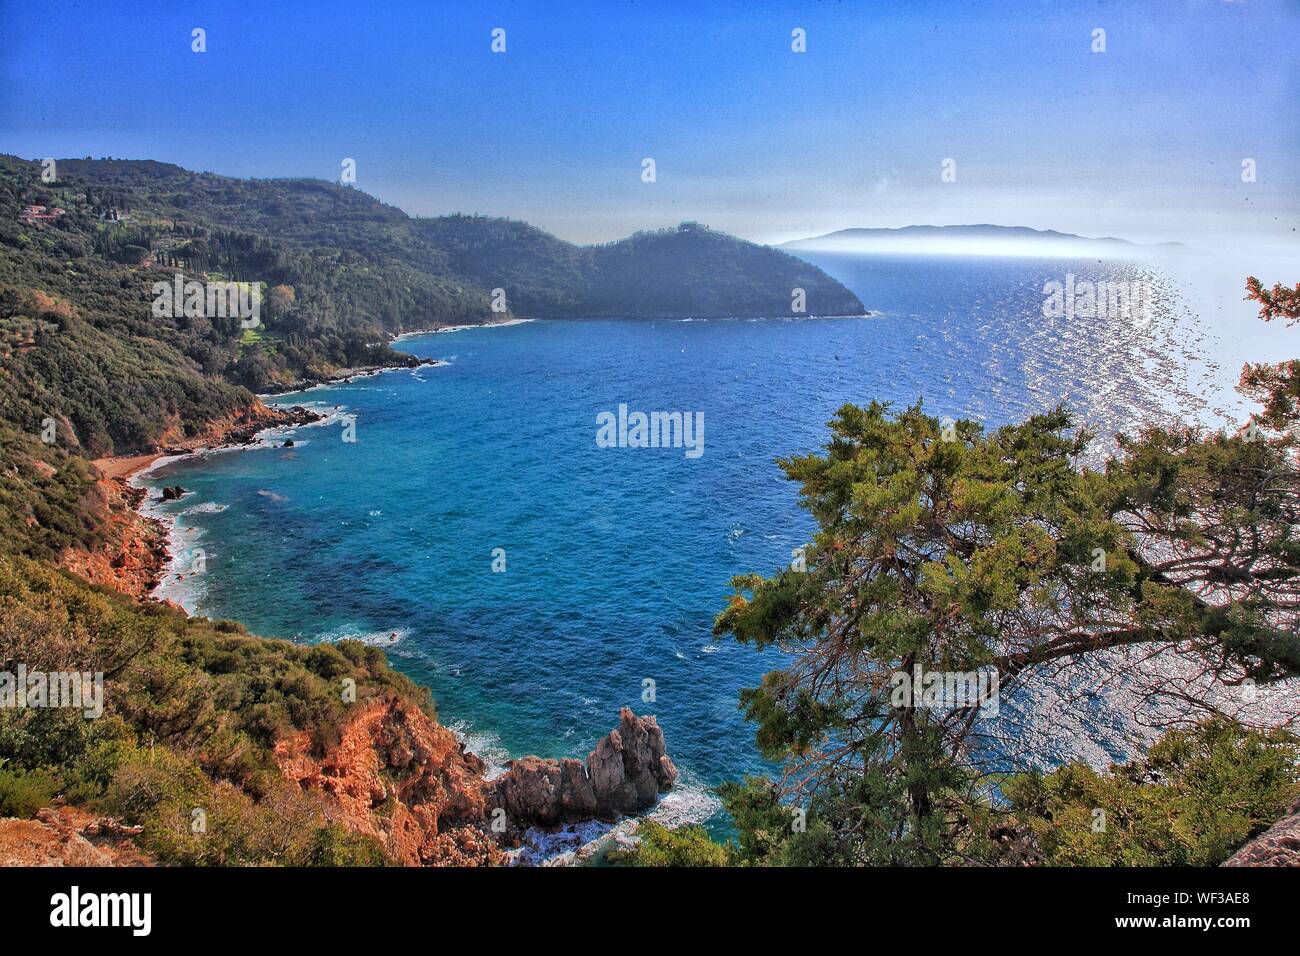 Scenic View Of Italian Coastline Stock Photo